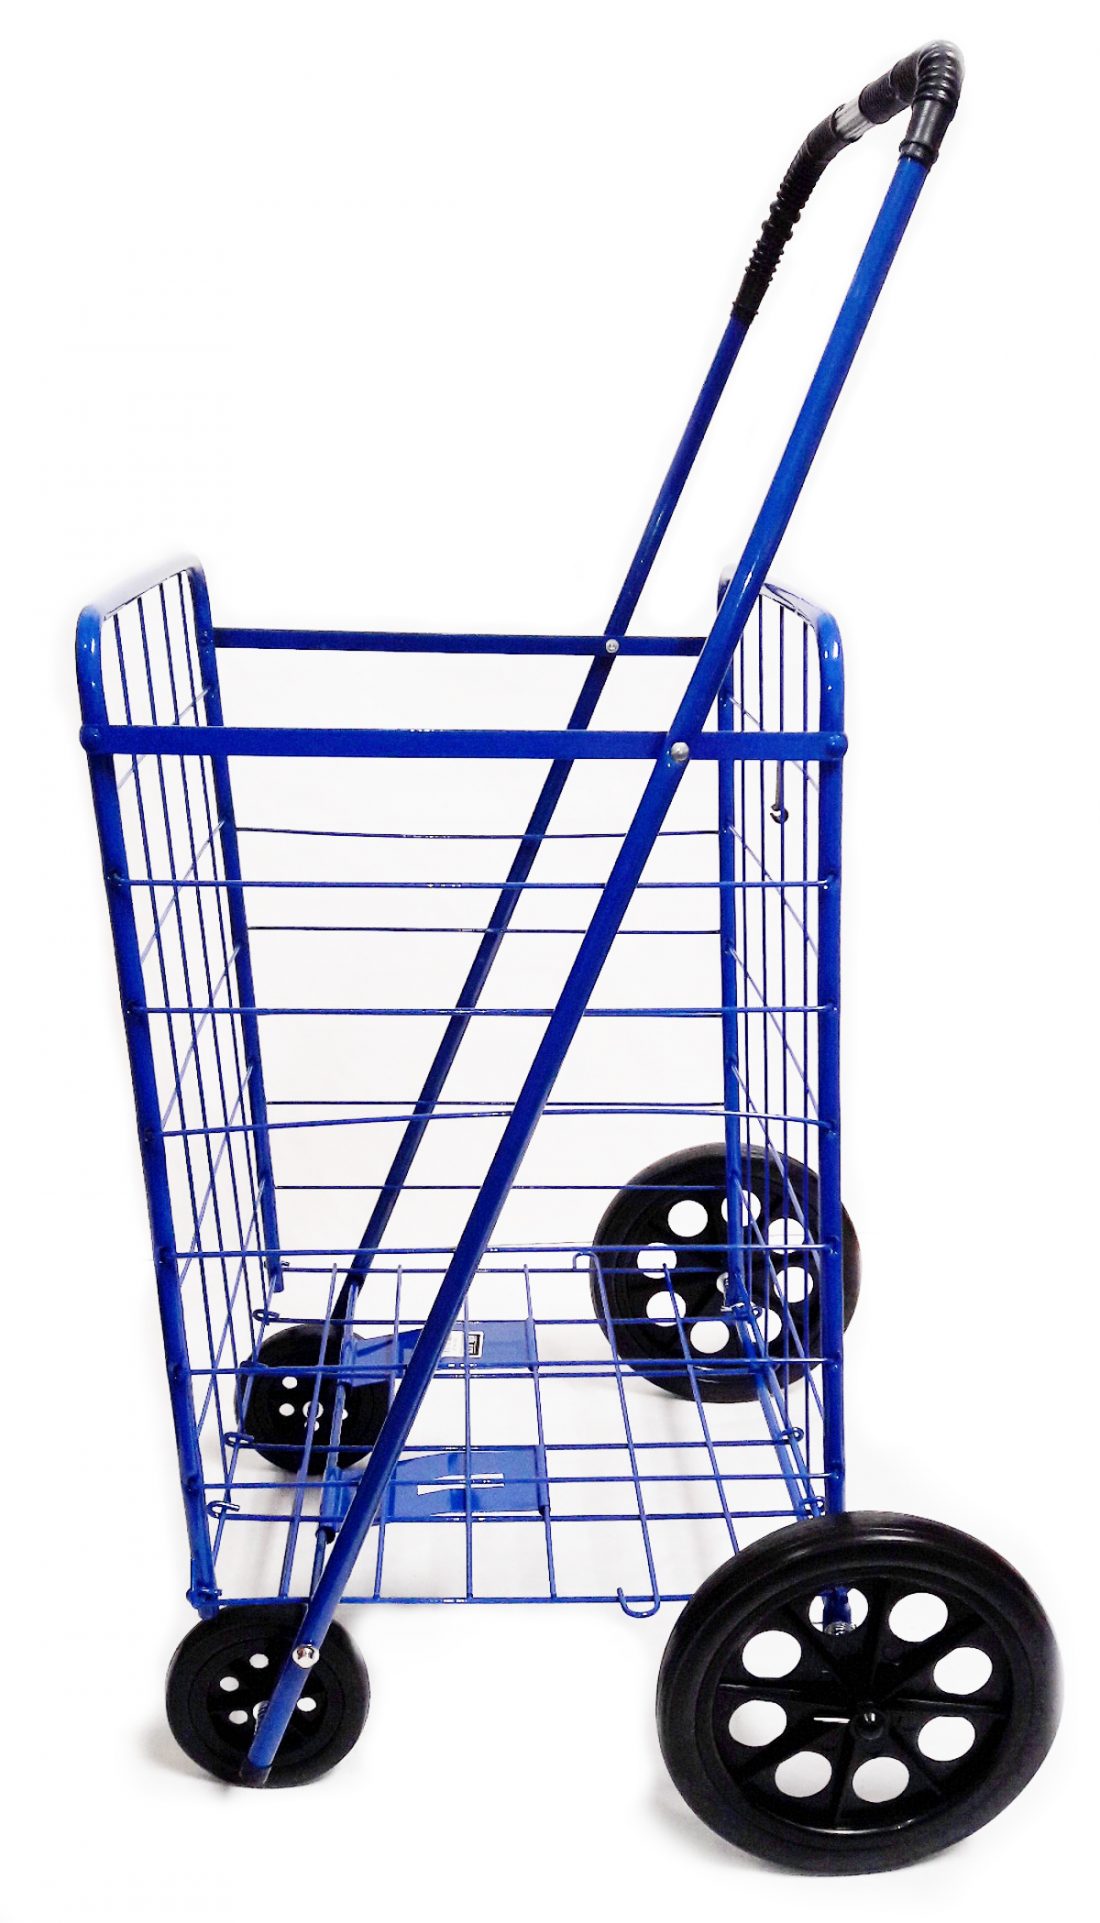 shop-cart-foldable